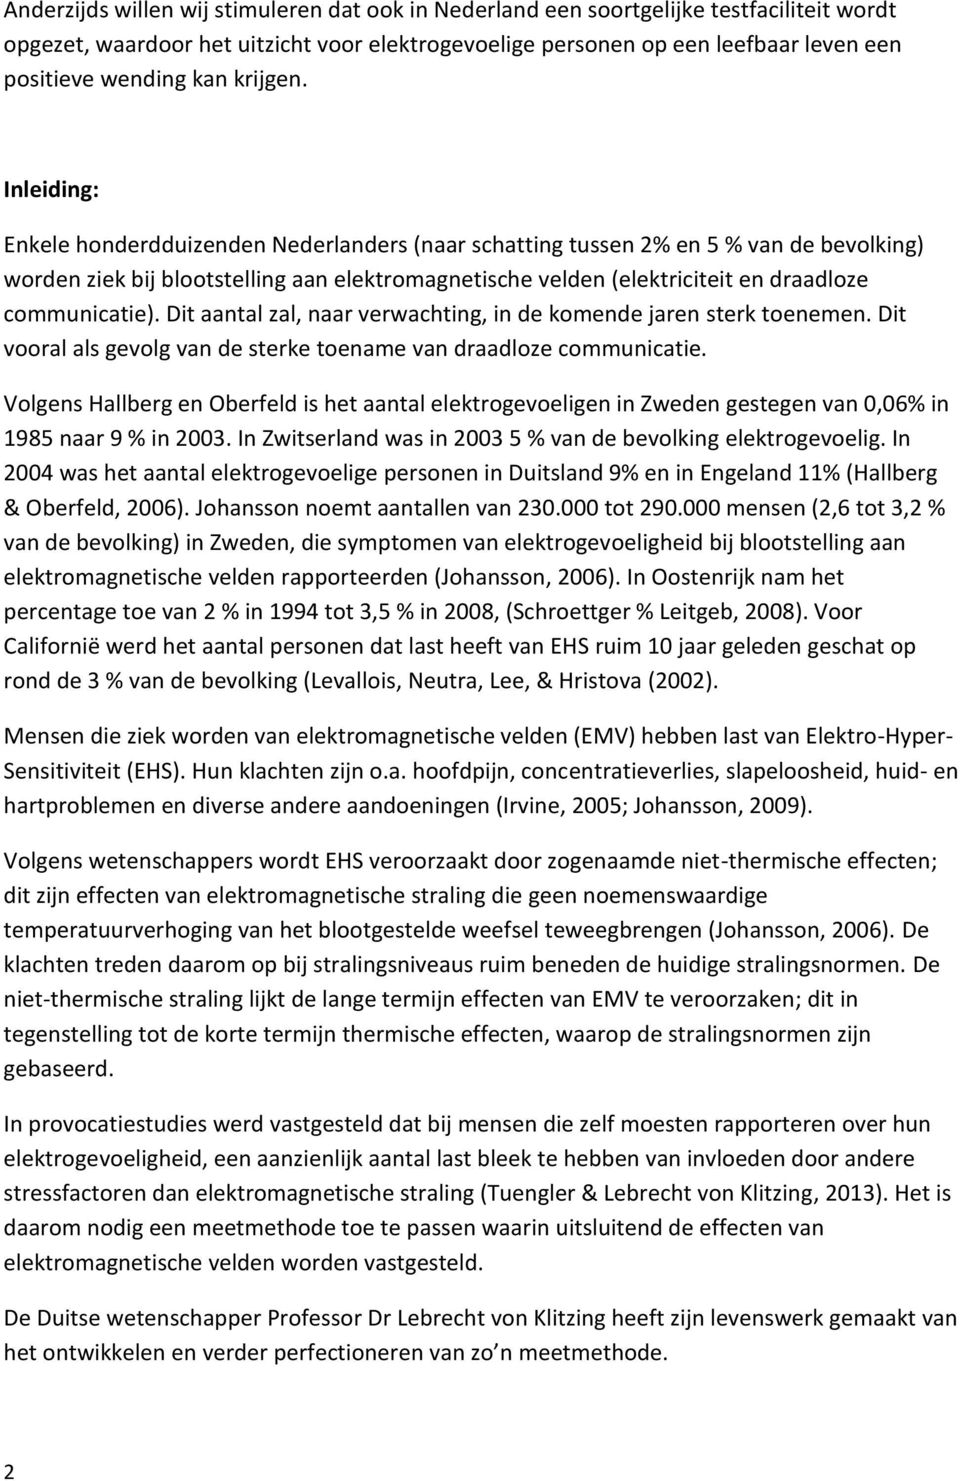 Inleiding: Enkele honderdduizenden Nederlanders (naar schatting tussen 2% en 5 % van de bevolking) worden ziek bij blootstelling aan elektromagnetische velden (elektriciteit en draadloze